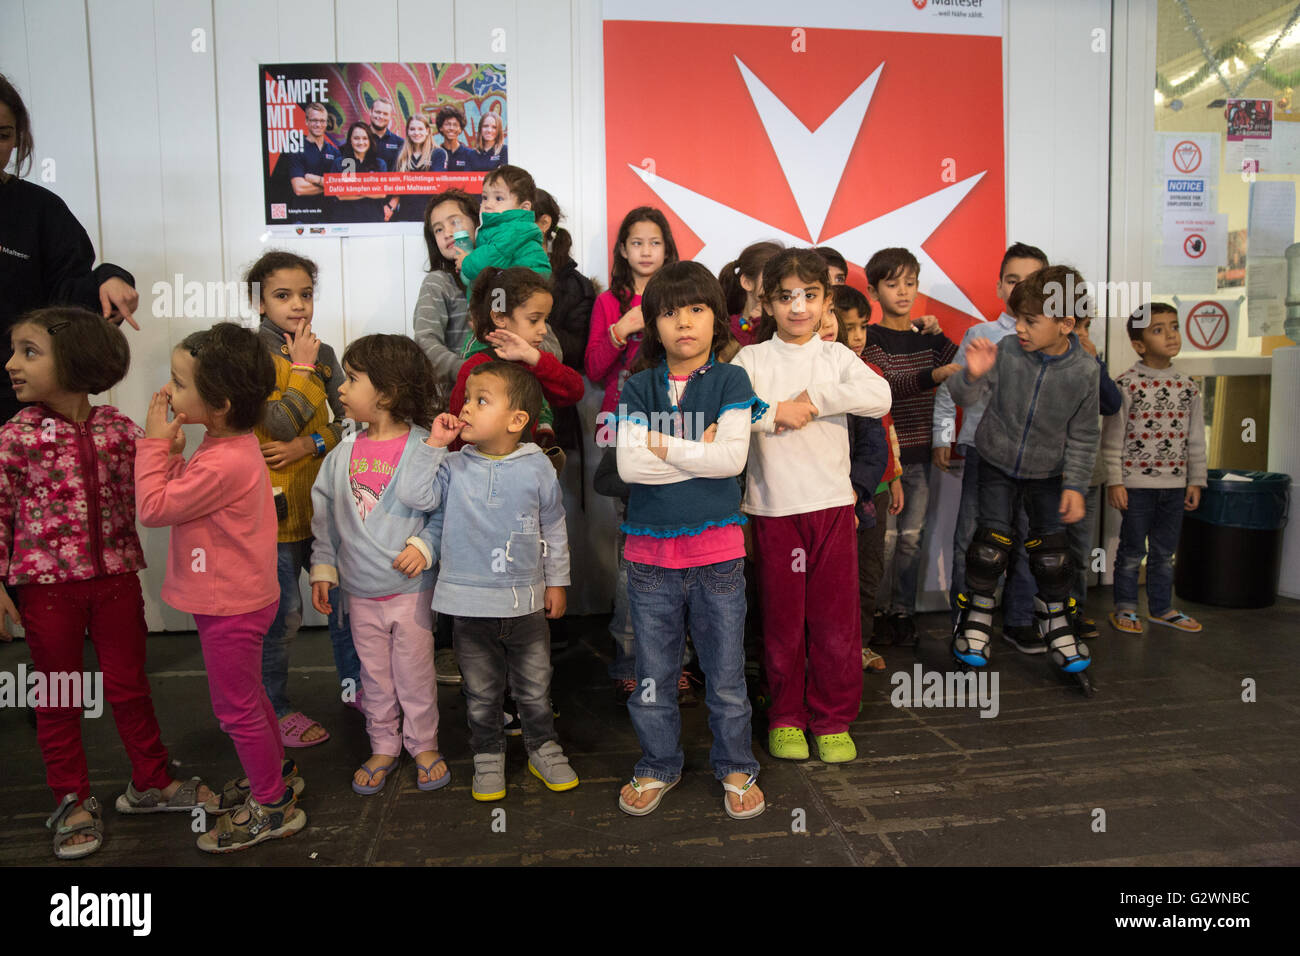 08.12.2015, Berlin, Berlin, Germania - Ministro della famiglia Manuela Schwesig (SPD) visitata presso il centro congressi di un ricovero per i rifugiati. In gestito da Malteser proprietà, circa 1.000 rifugiati registrati sono alloggiati, la maggior parte delle loro famiglie. Qui quando si visita la custodia dei bambini. 0DB151208D018CAROEX.JPG - non per la vendita in G E R M A N Y, A U S T R I A, S W I T Z e R L A N D [modello di rilascio: NO, la proprietà di rilascio: NO, (c) caro agenzia fotografica / Bleicker, http://www.caro-images.com, info@carofoto.pl - Qualsiasi uso di questa immagine è soggetto a royalty!] Foto Stock